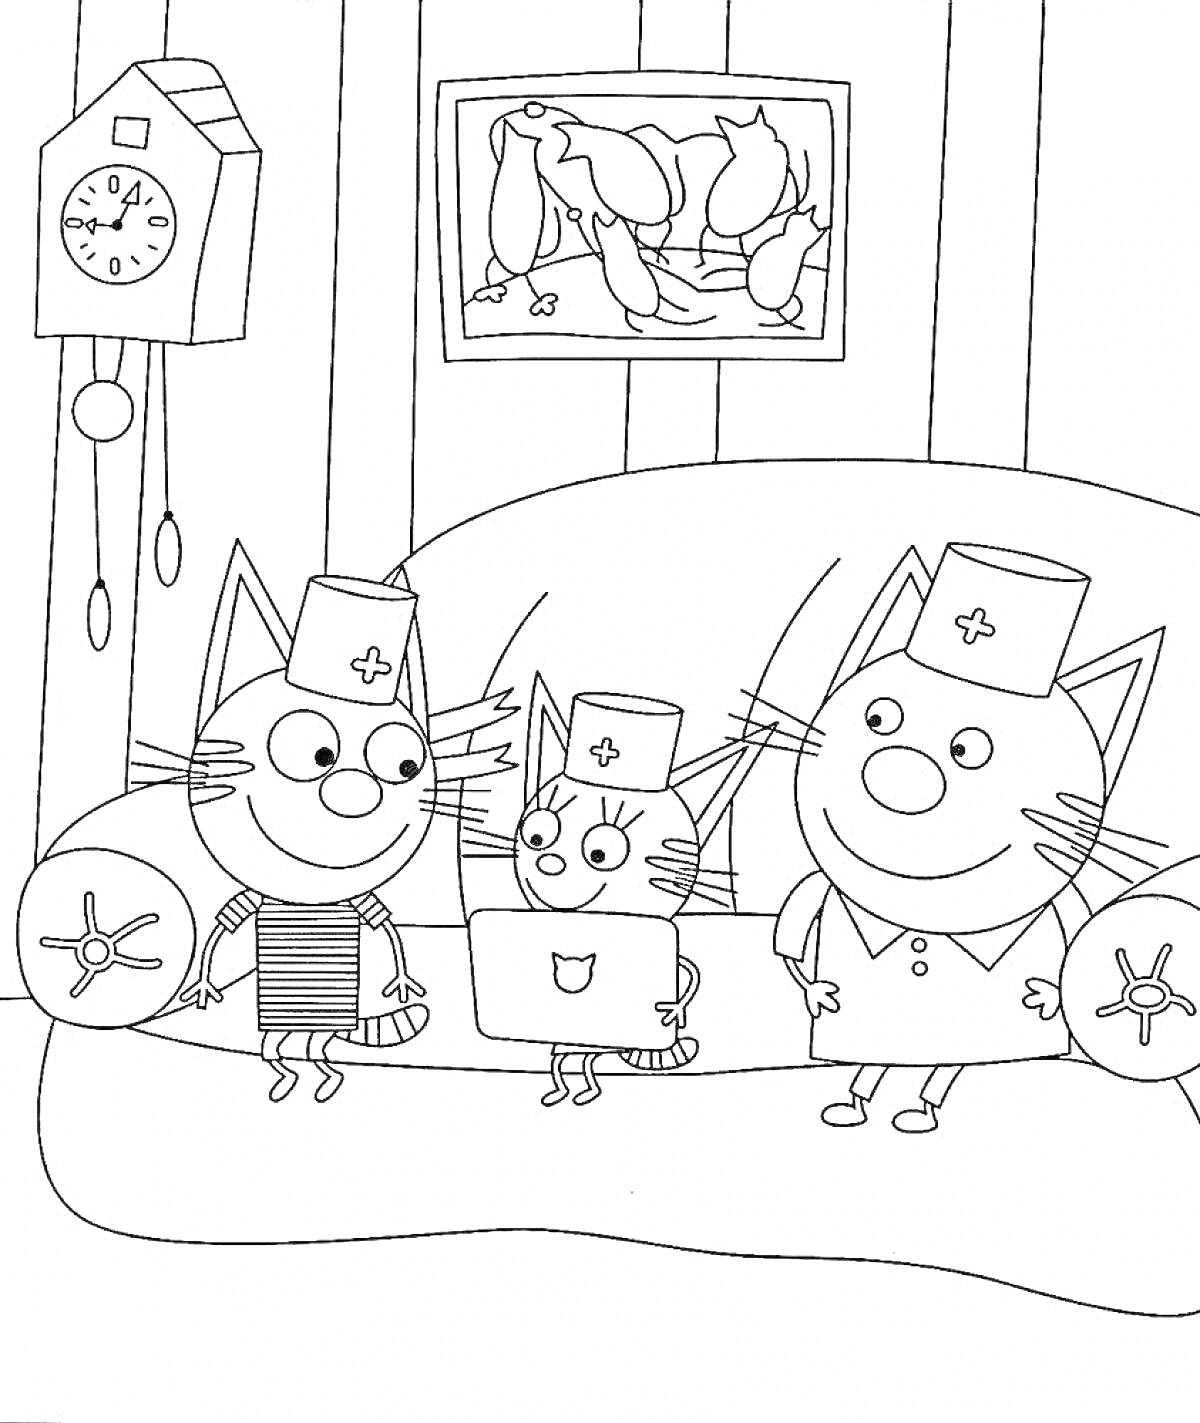 Раскраска Три кота на диване в медицинских шапочках, два подушки, часы, картина на стене